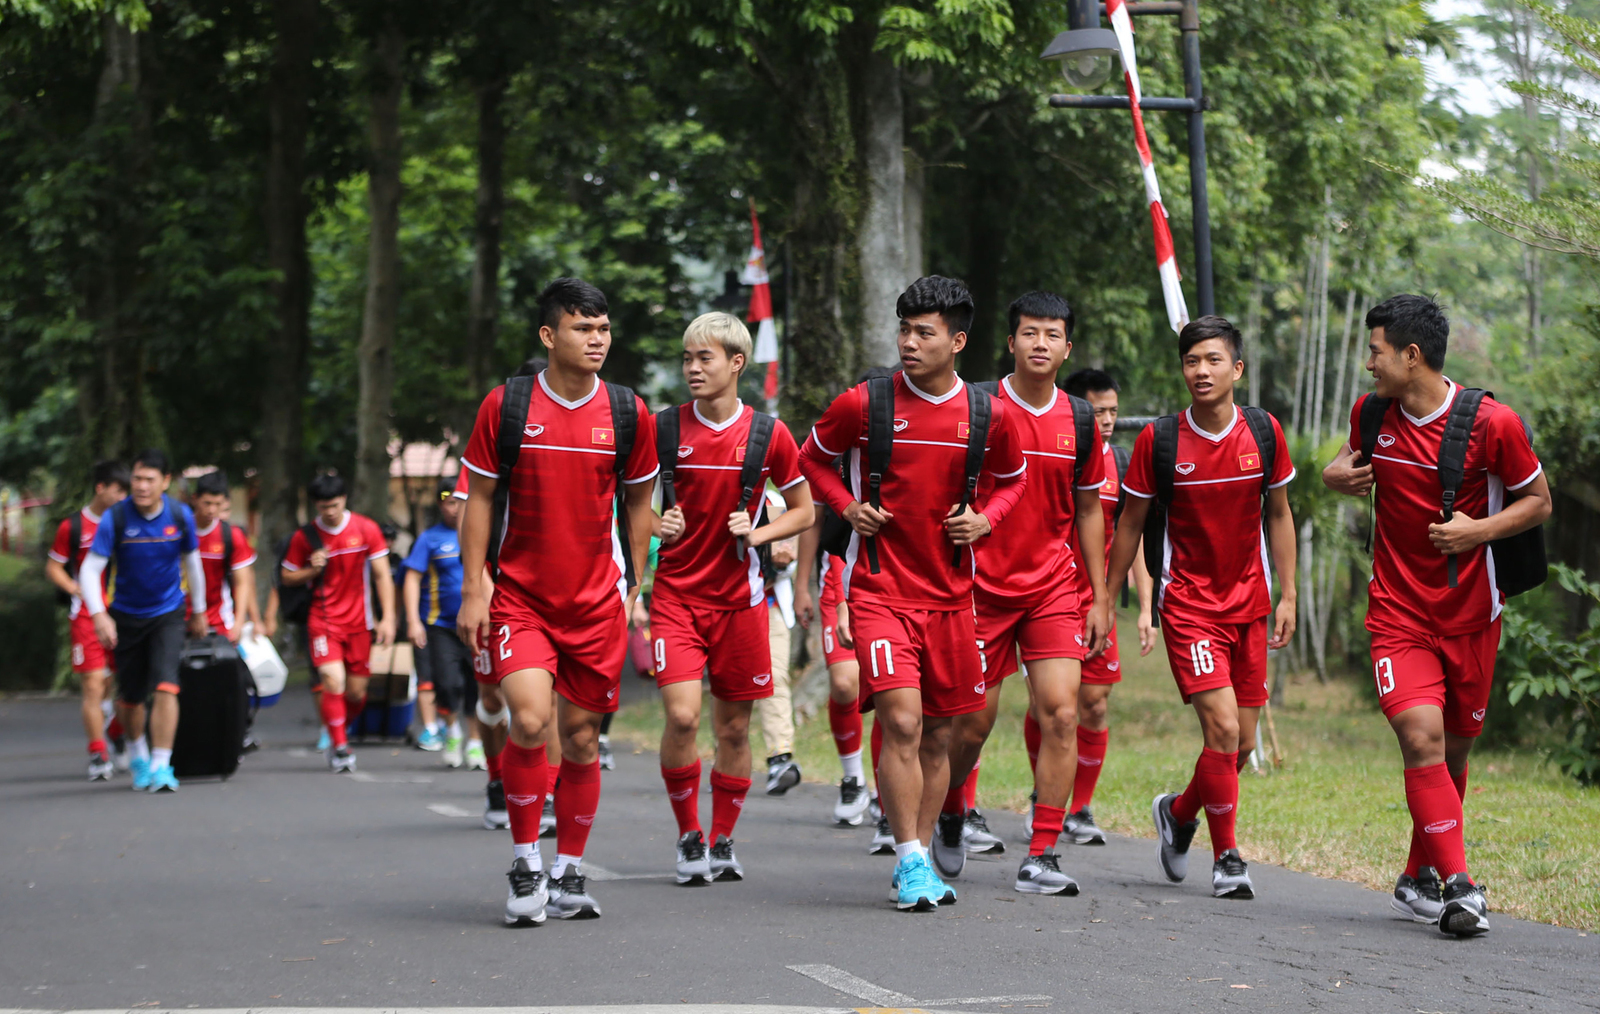 Đội được bố trí tập luyện trong khuôn viên của trường Sekolah Pelita Harapan International - Top 3 ngôi trường danh giá nhất Indonesia, được mệnh danh là ngôi trường dành cho con nhà giàu.